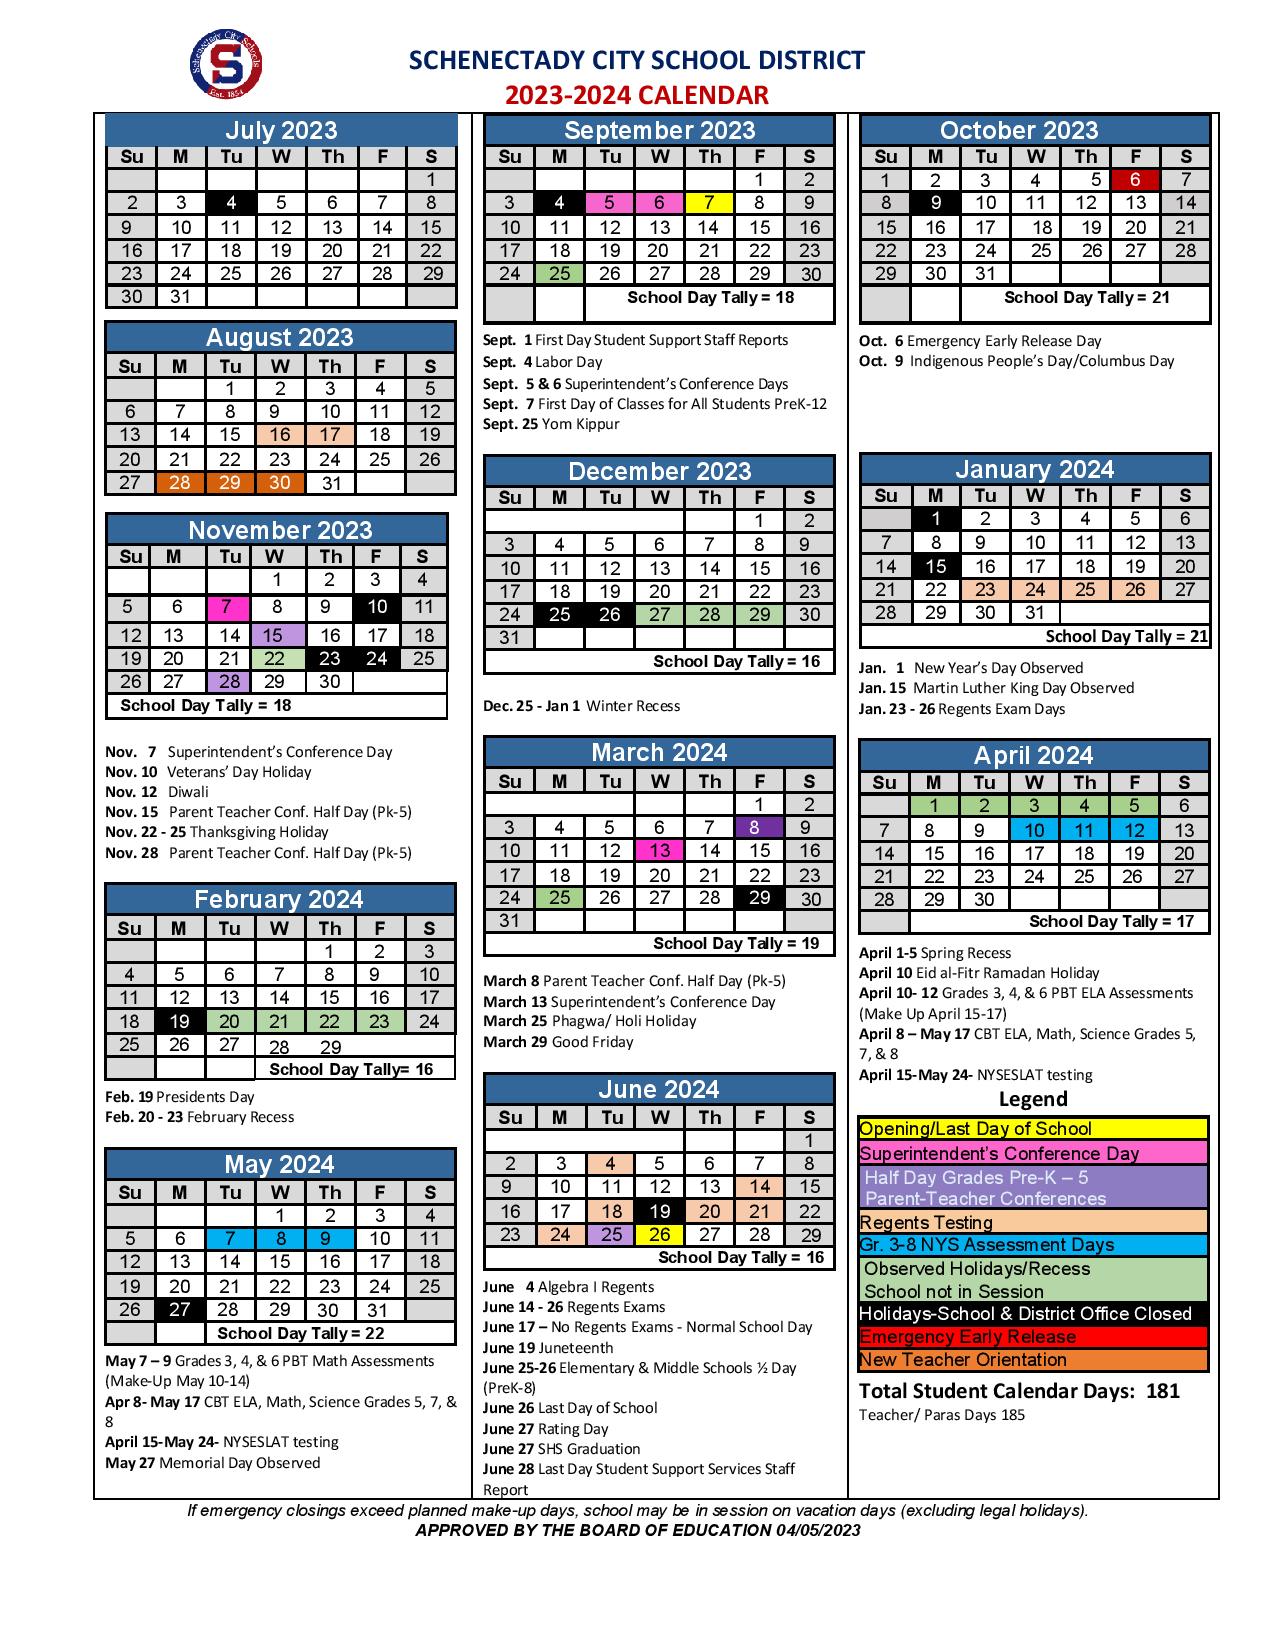 Schenectady City School District Calendar 20232024